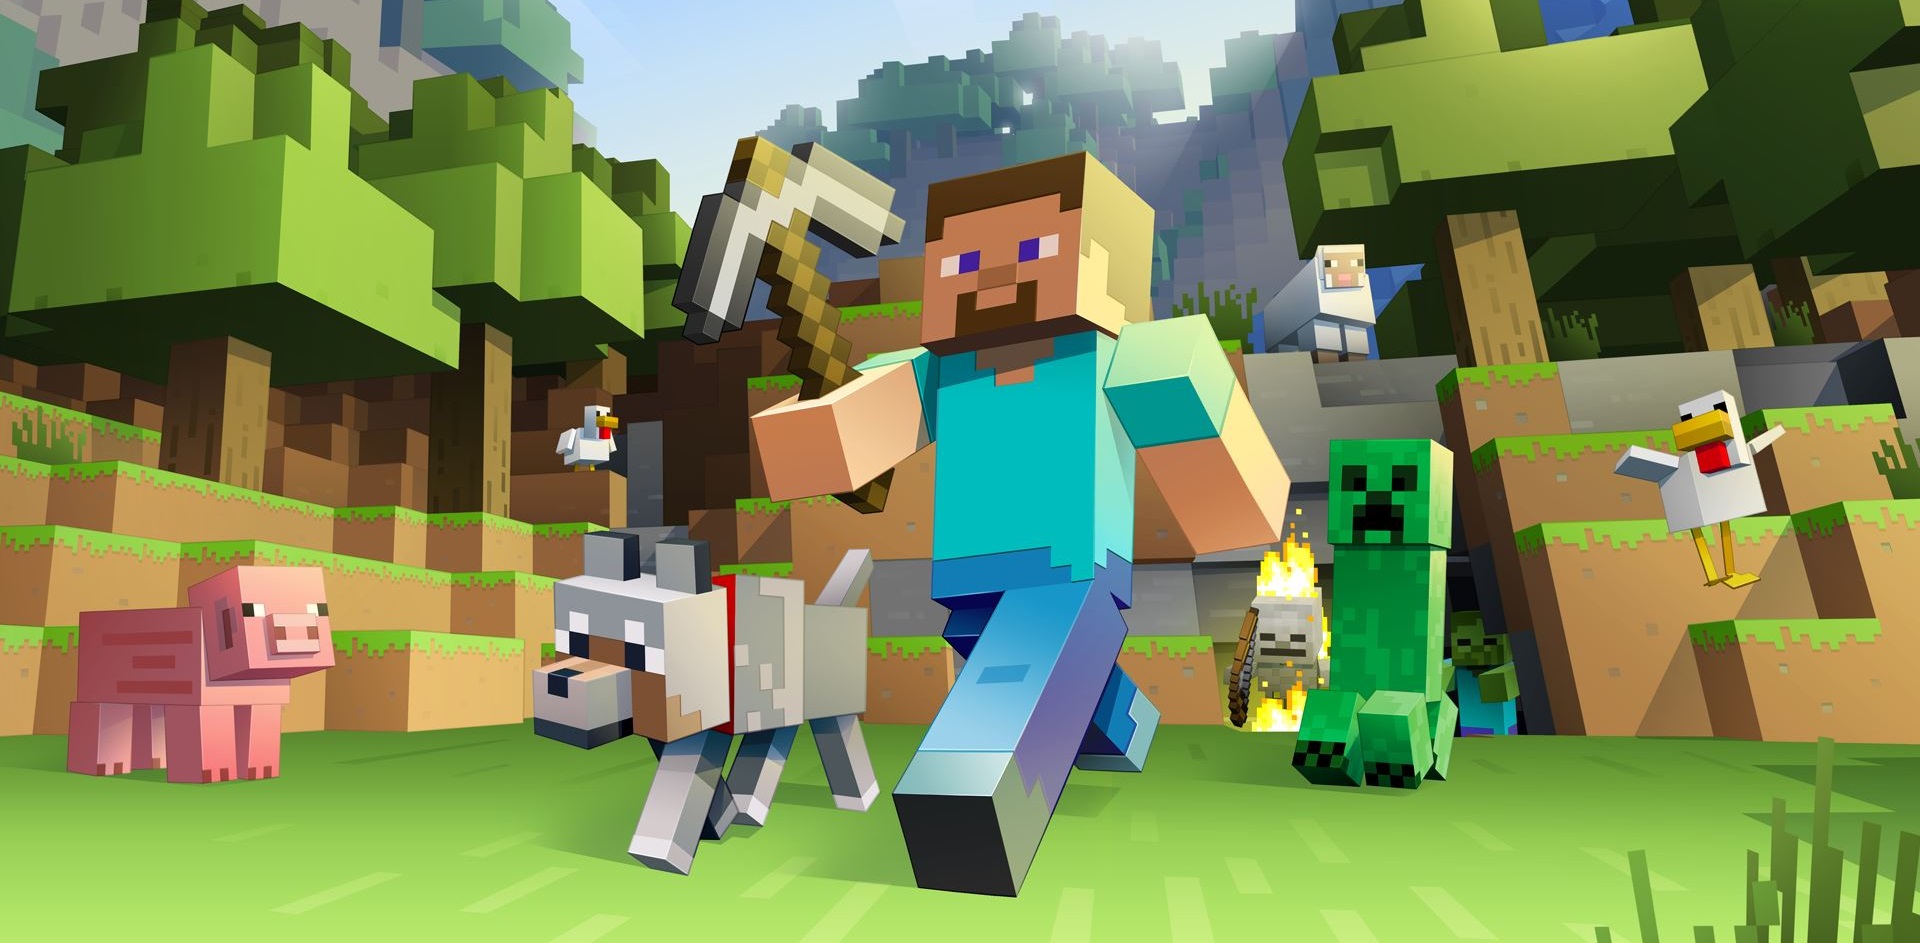 Hračky Minecraft udělají radost každému objeviteli tohoto krychlového světa